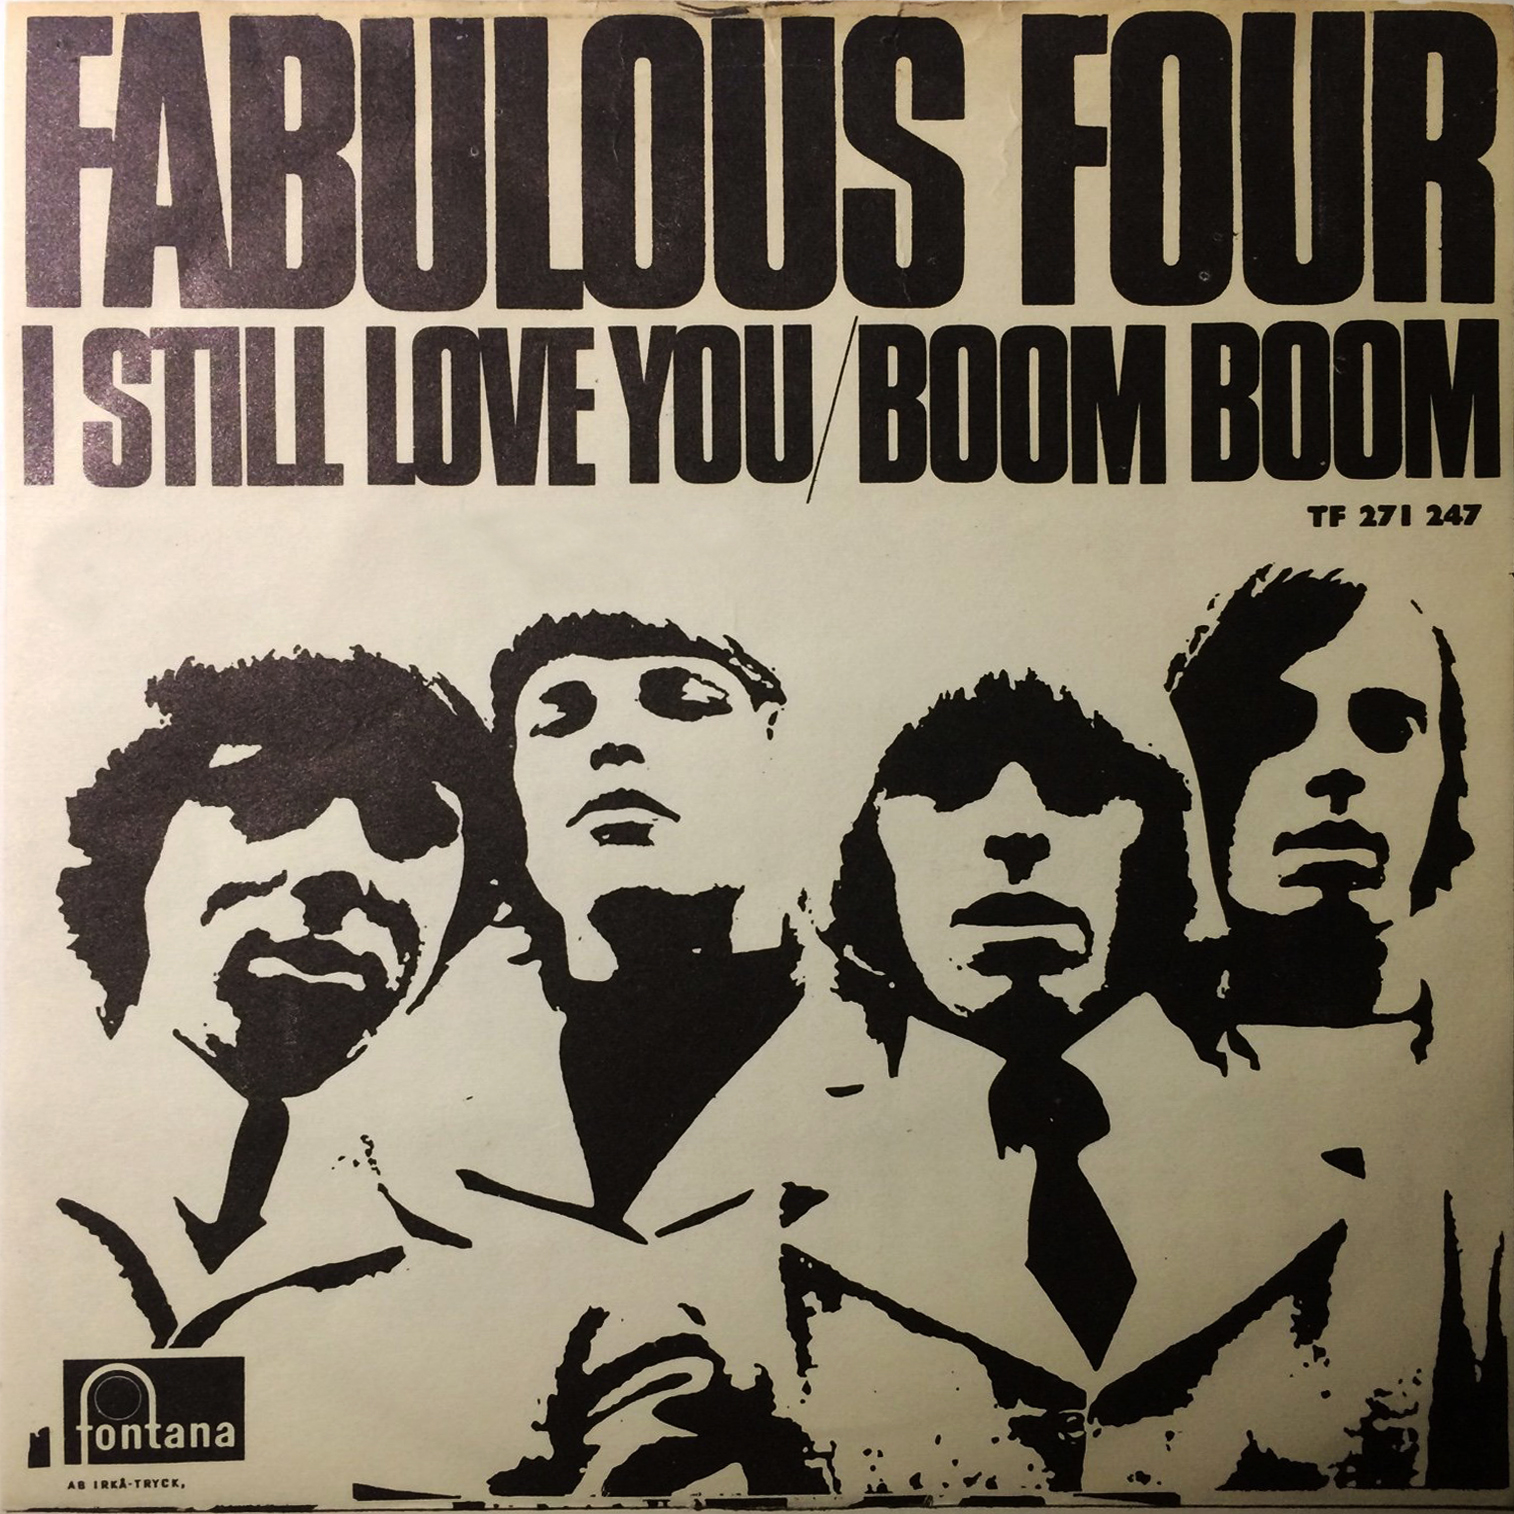 I Still Love You/Boom Boom